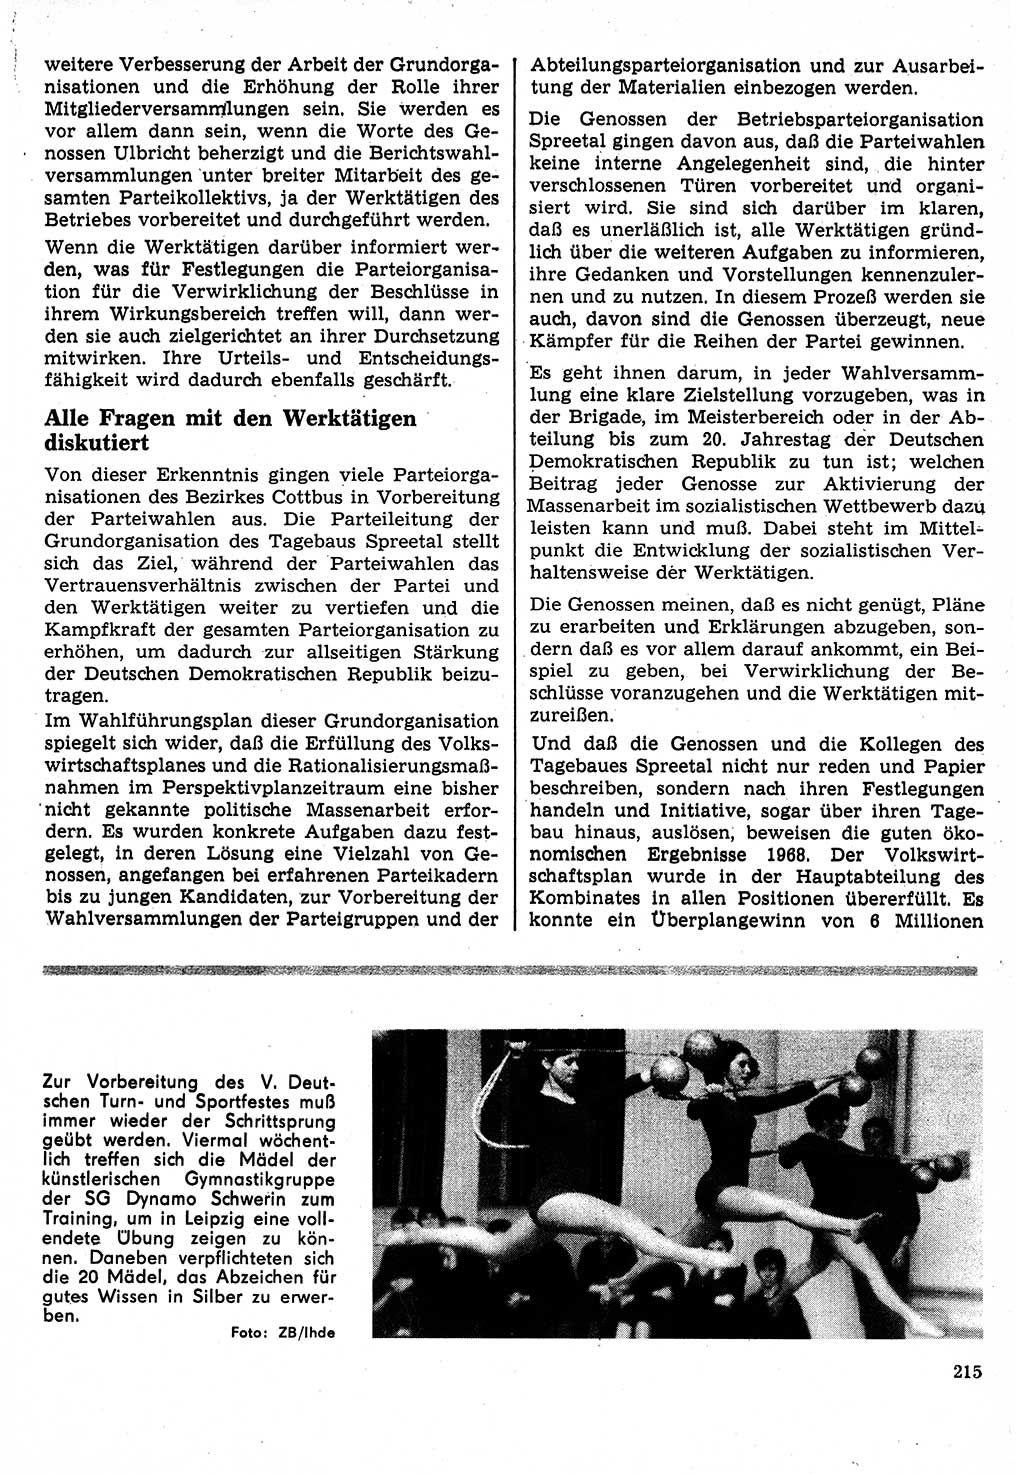 Neuer Weg (NW), Organ des Zentralkomitees (ZK) der SED (Sozialistische Einheitspartei Deutschlands) für Fragen des Parteilebens, 24. Jahrgang [Deutsche Demokratische Republik (DDR)] 1969, Seite 215 (NW ZK SED DDR 1969, S. 215)